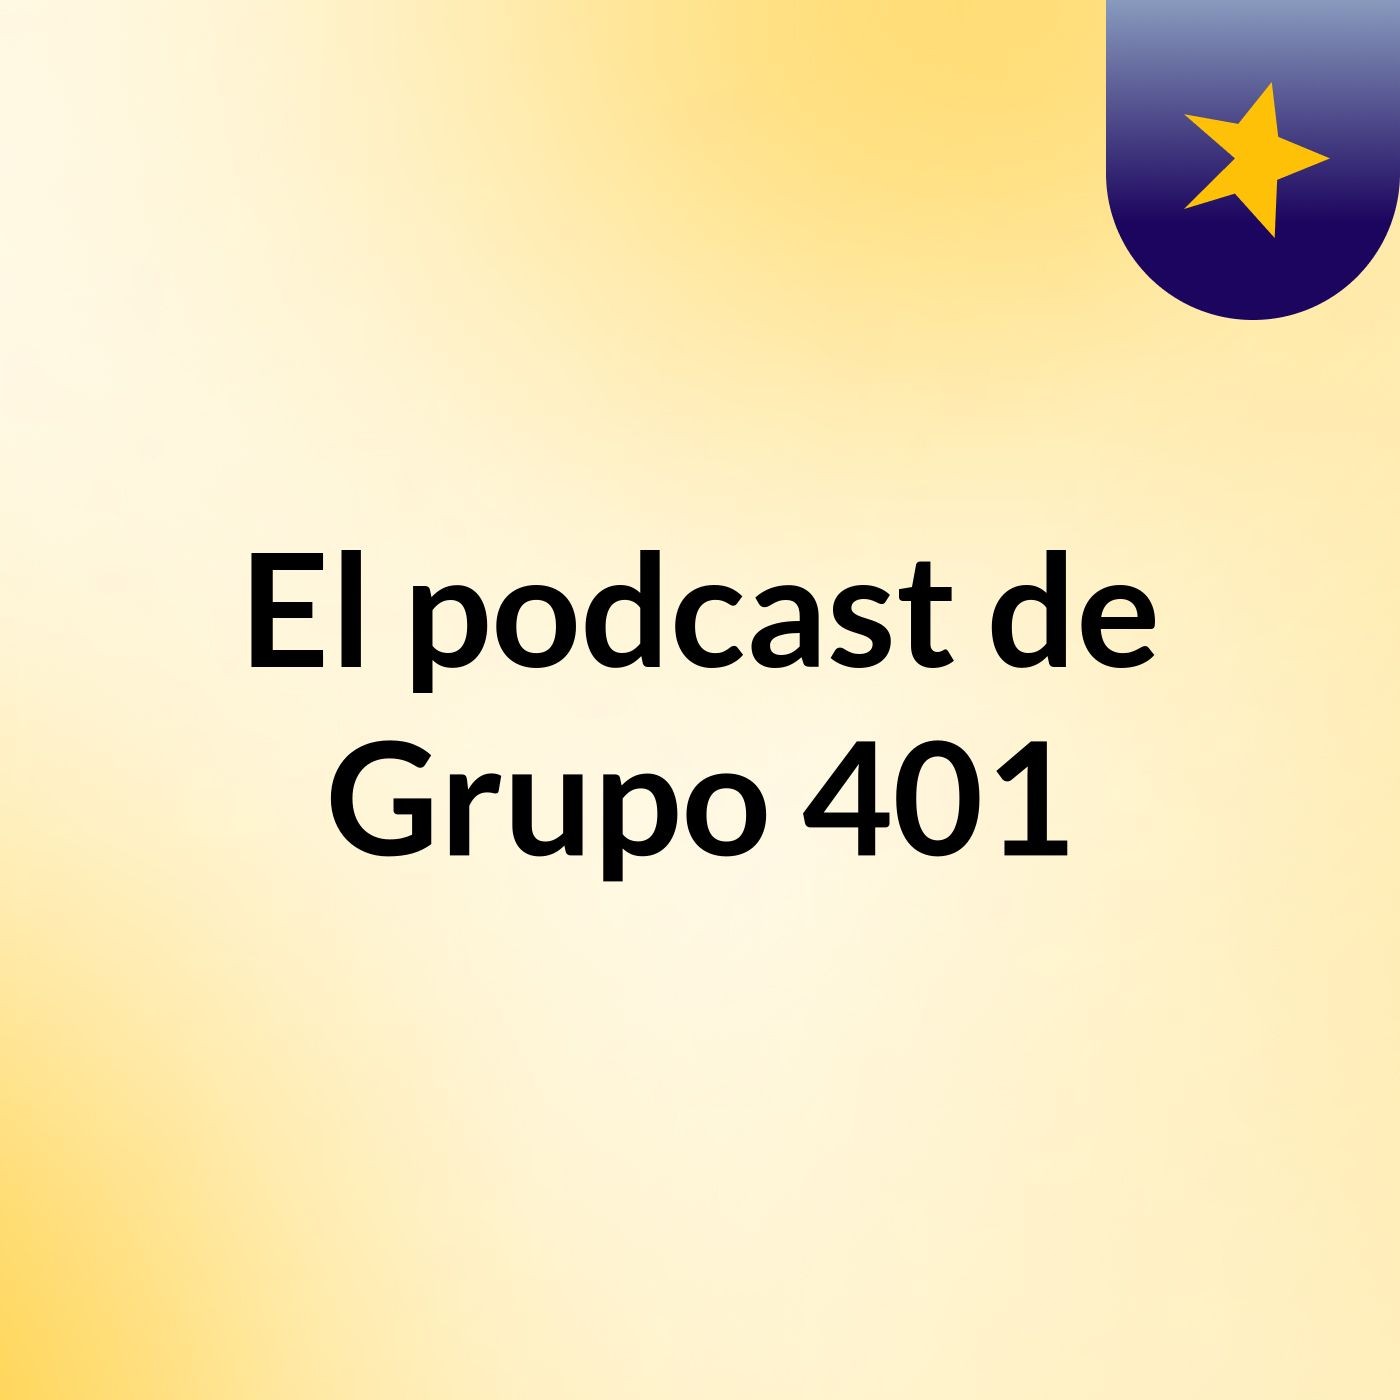 El podcast de Grupo 401